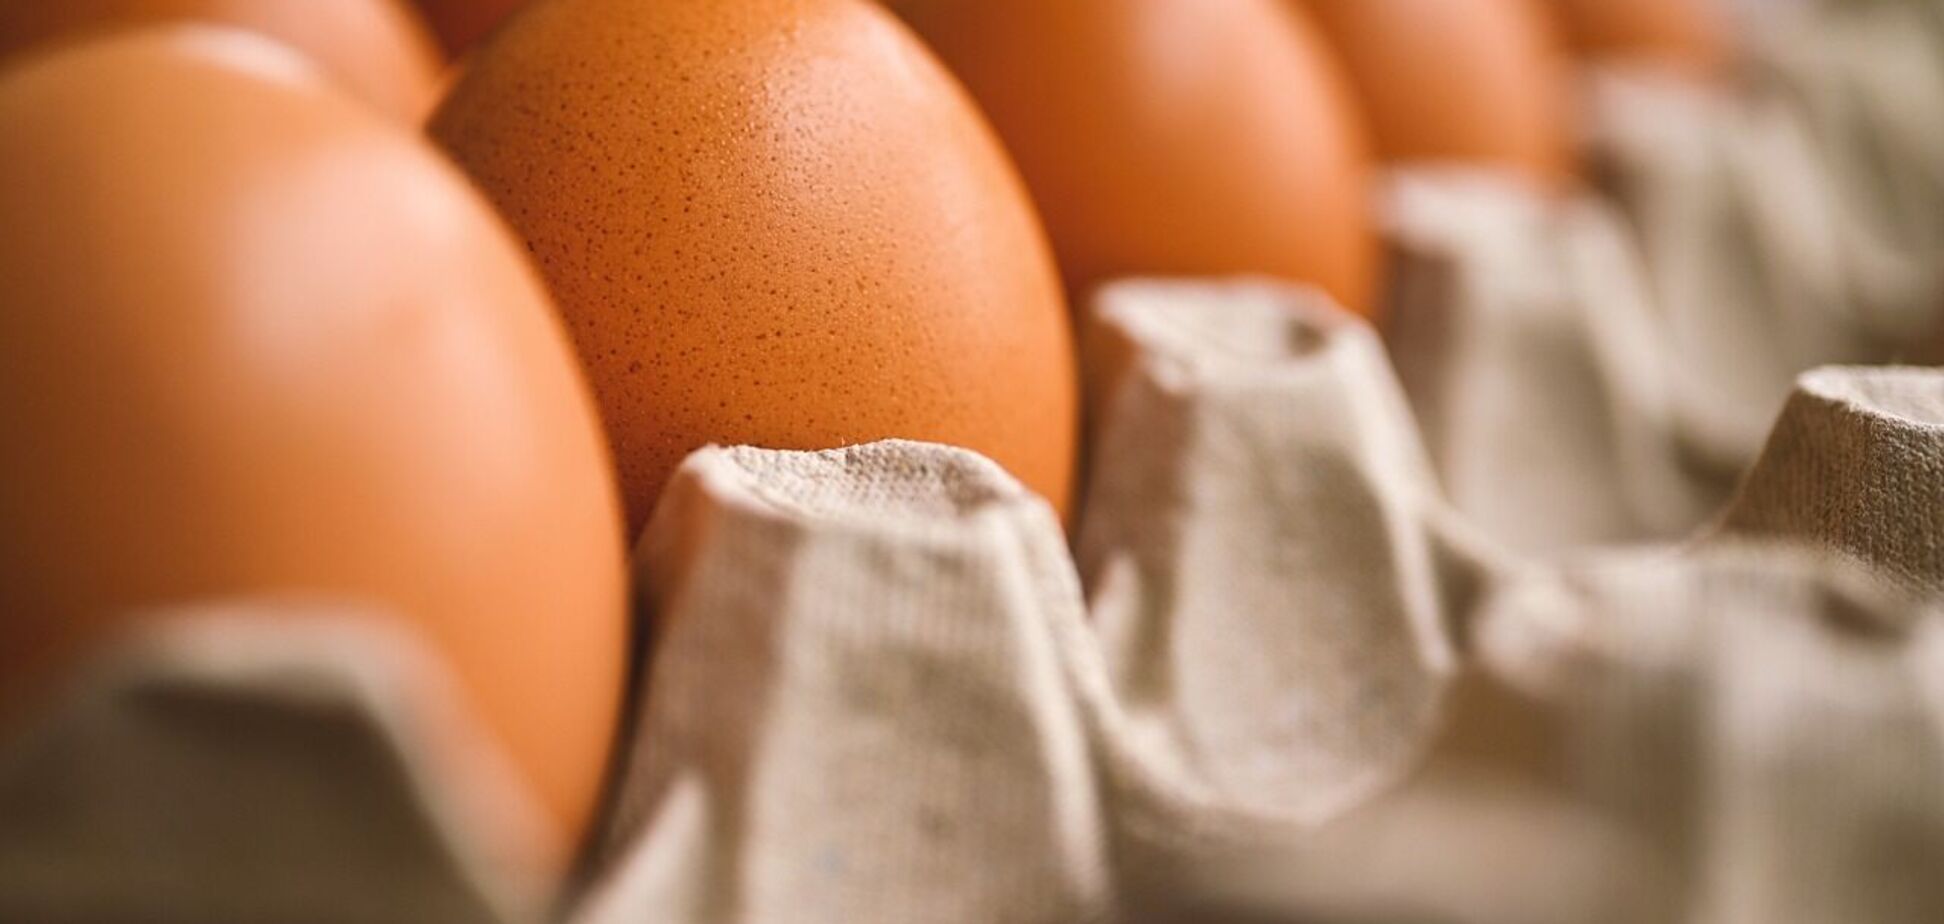 Чи дійсно яйця корисні для здоровʼя людини: відповідь лікаря 